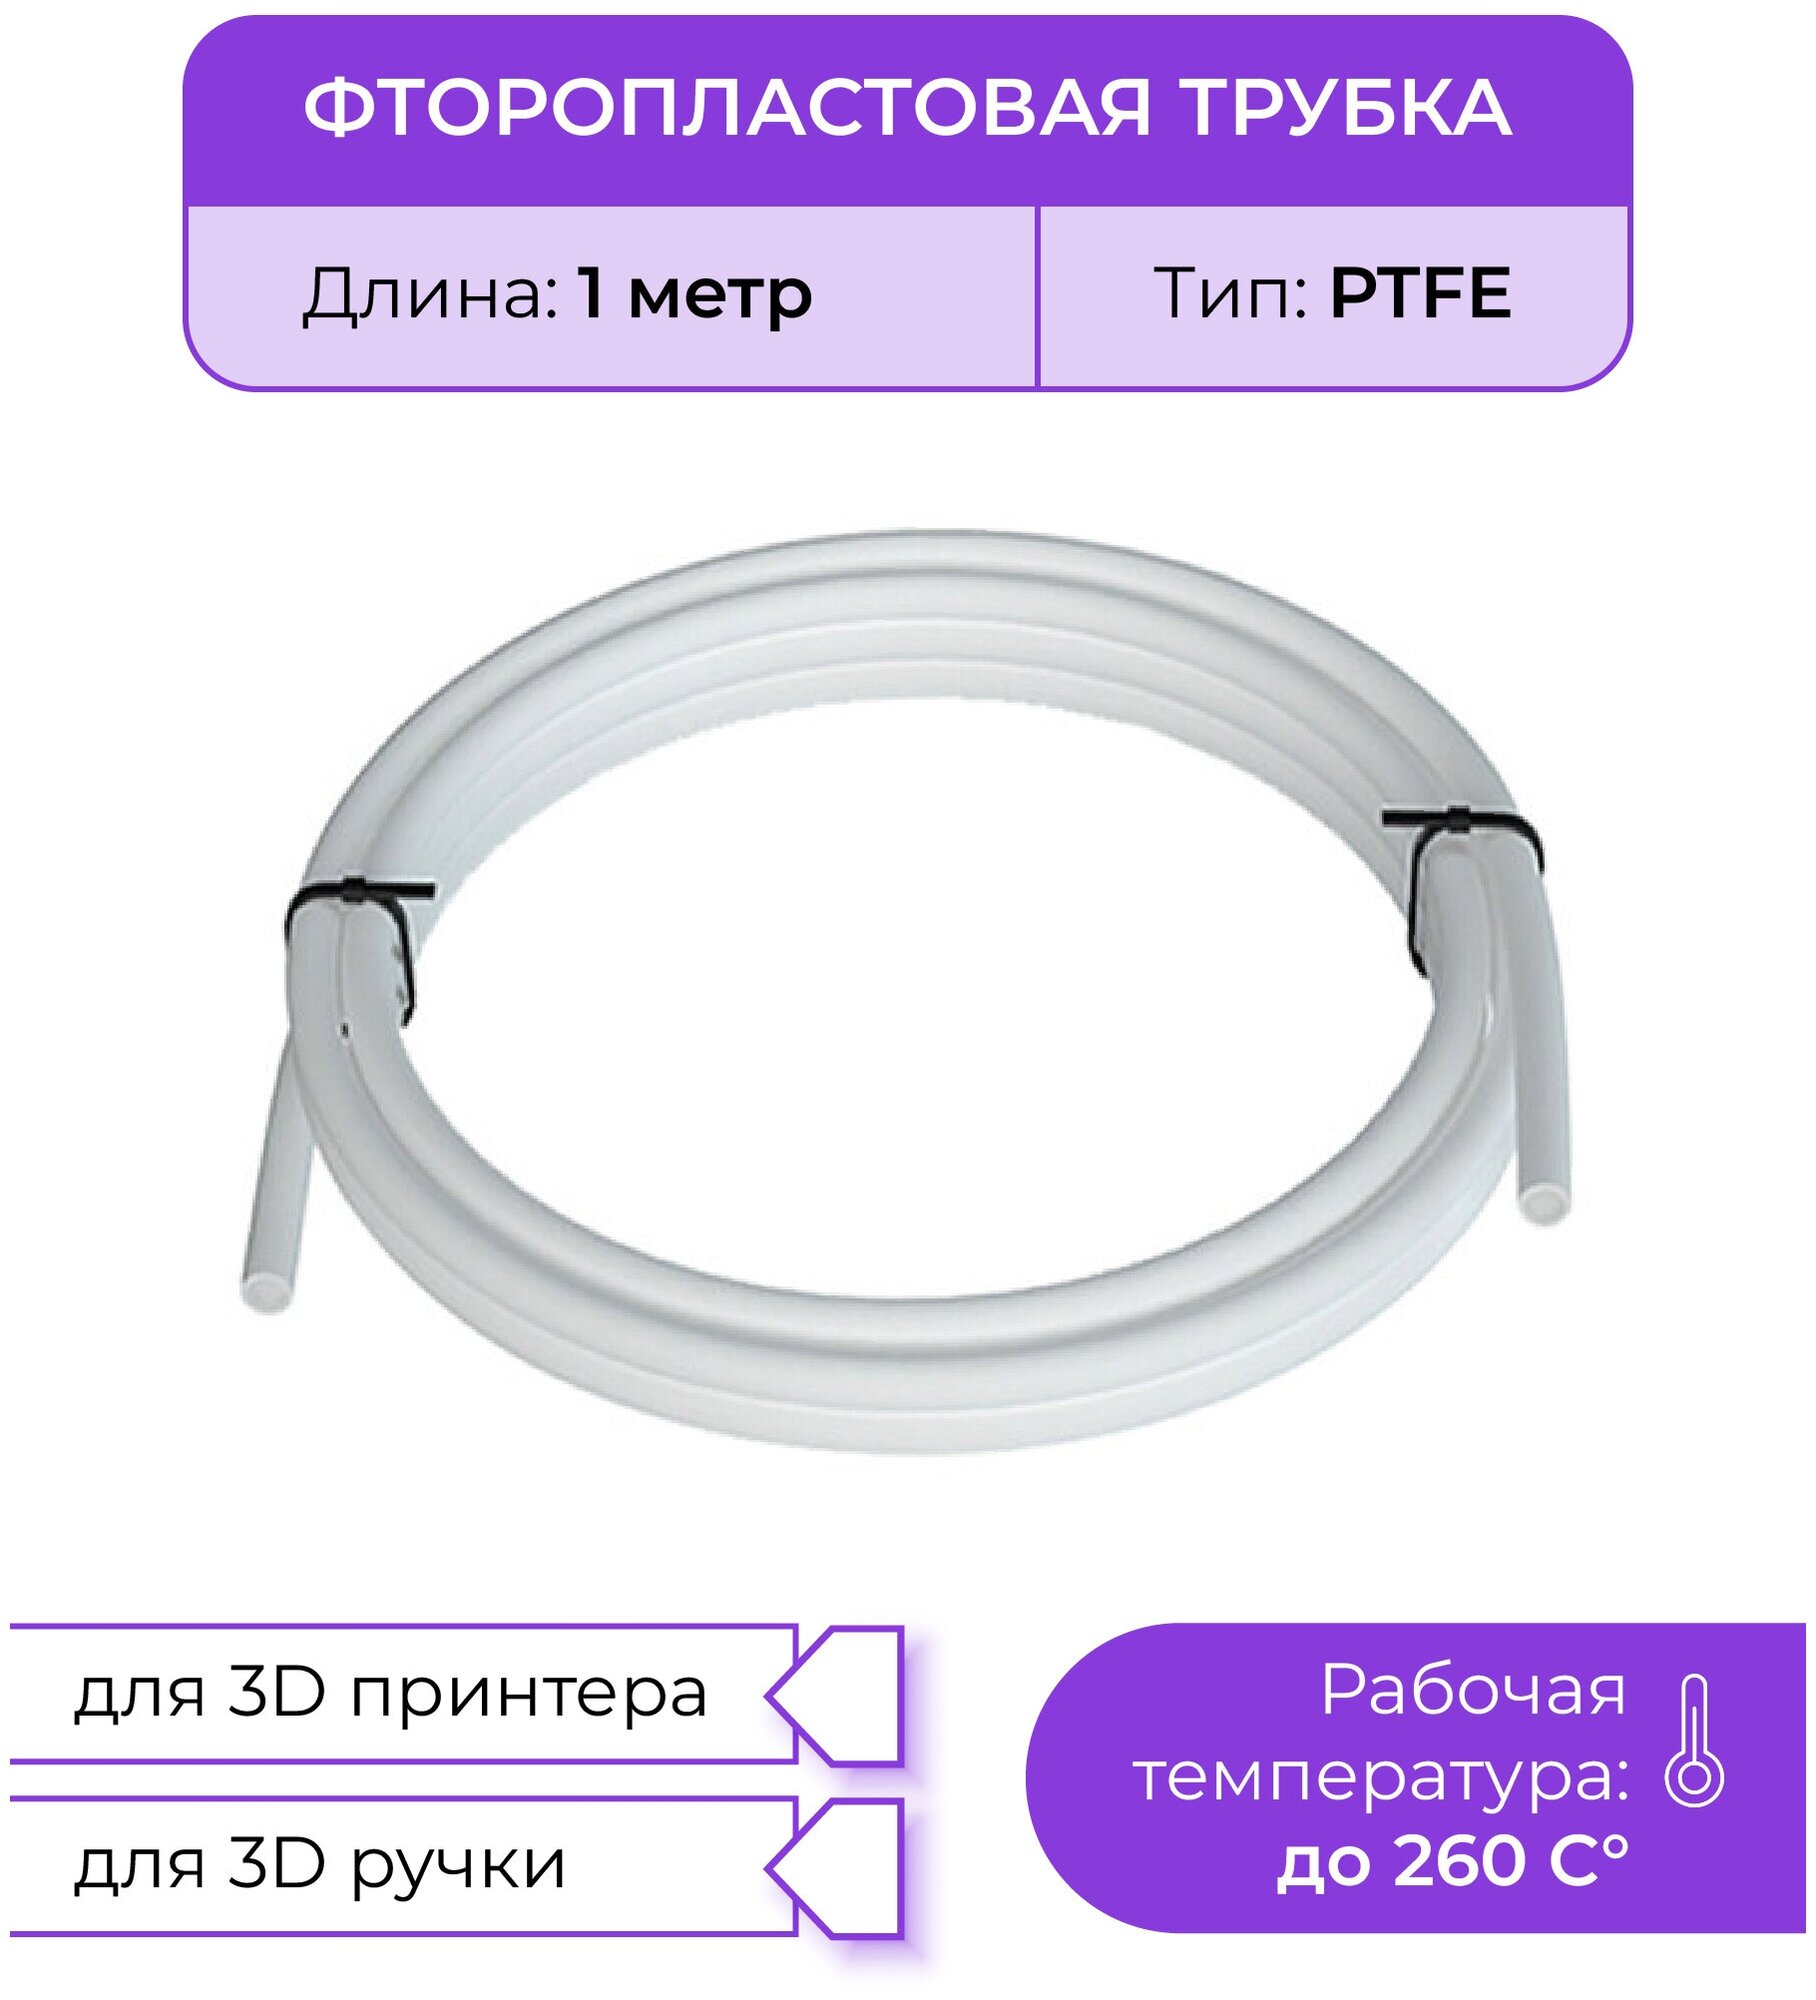 Трубка фторoпластовая белая (PTFE, тефлоновая), 1м, для 3D принтера, 3D ручки